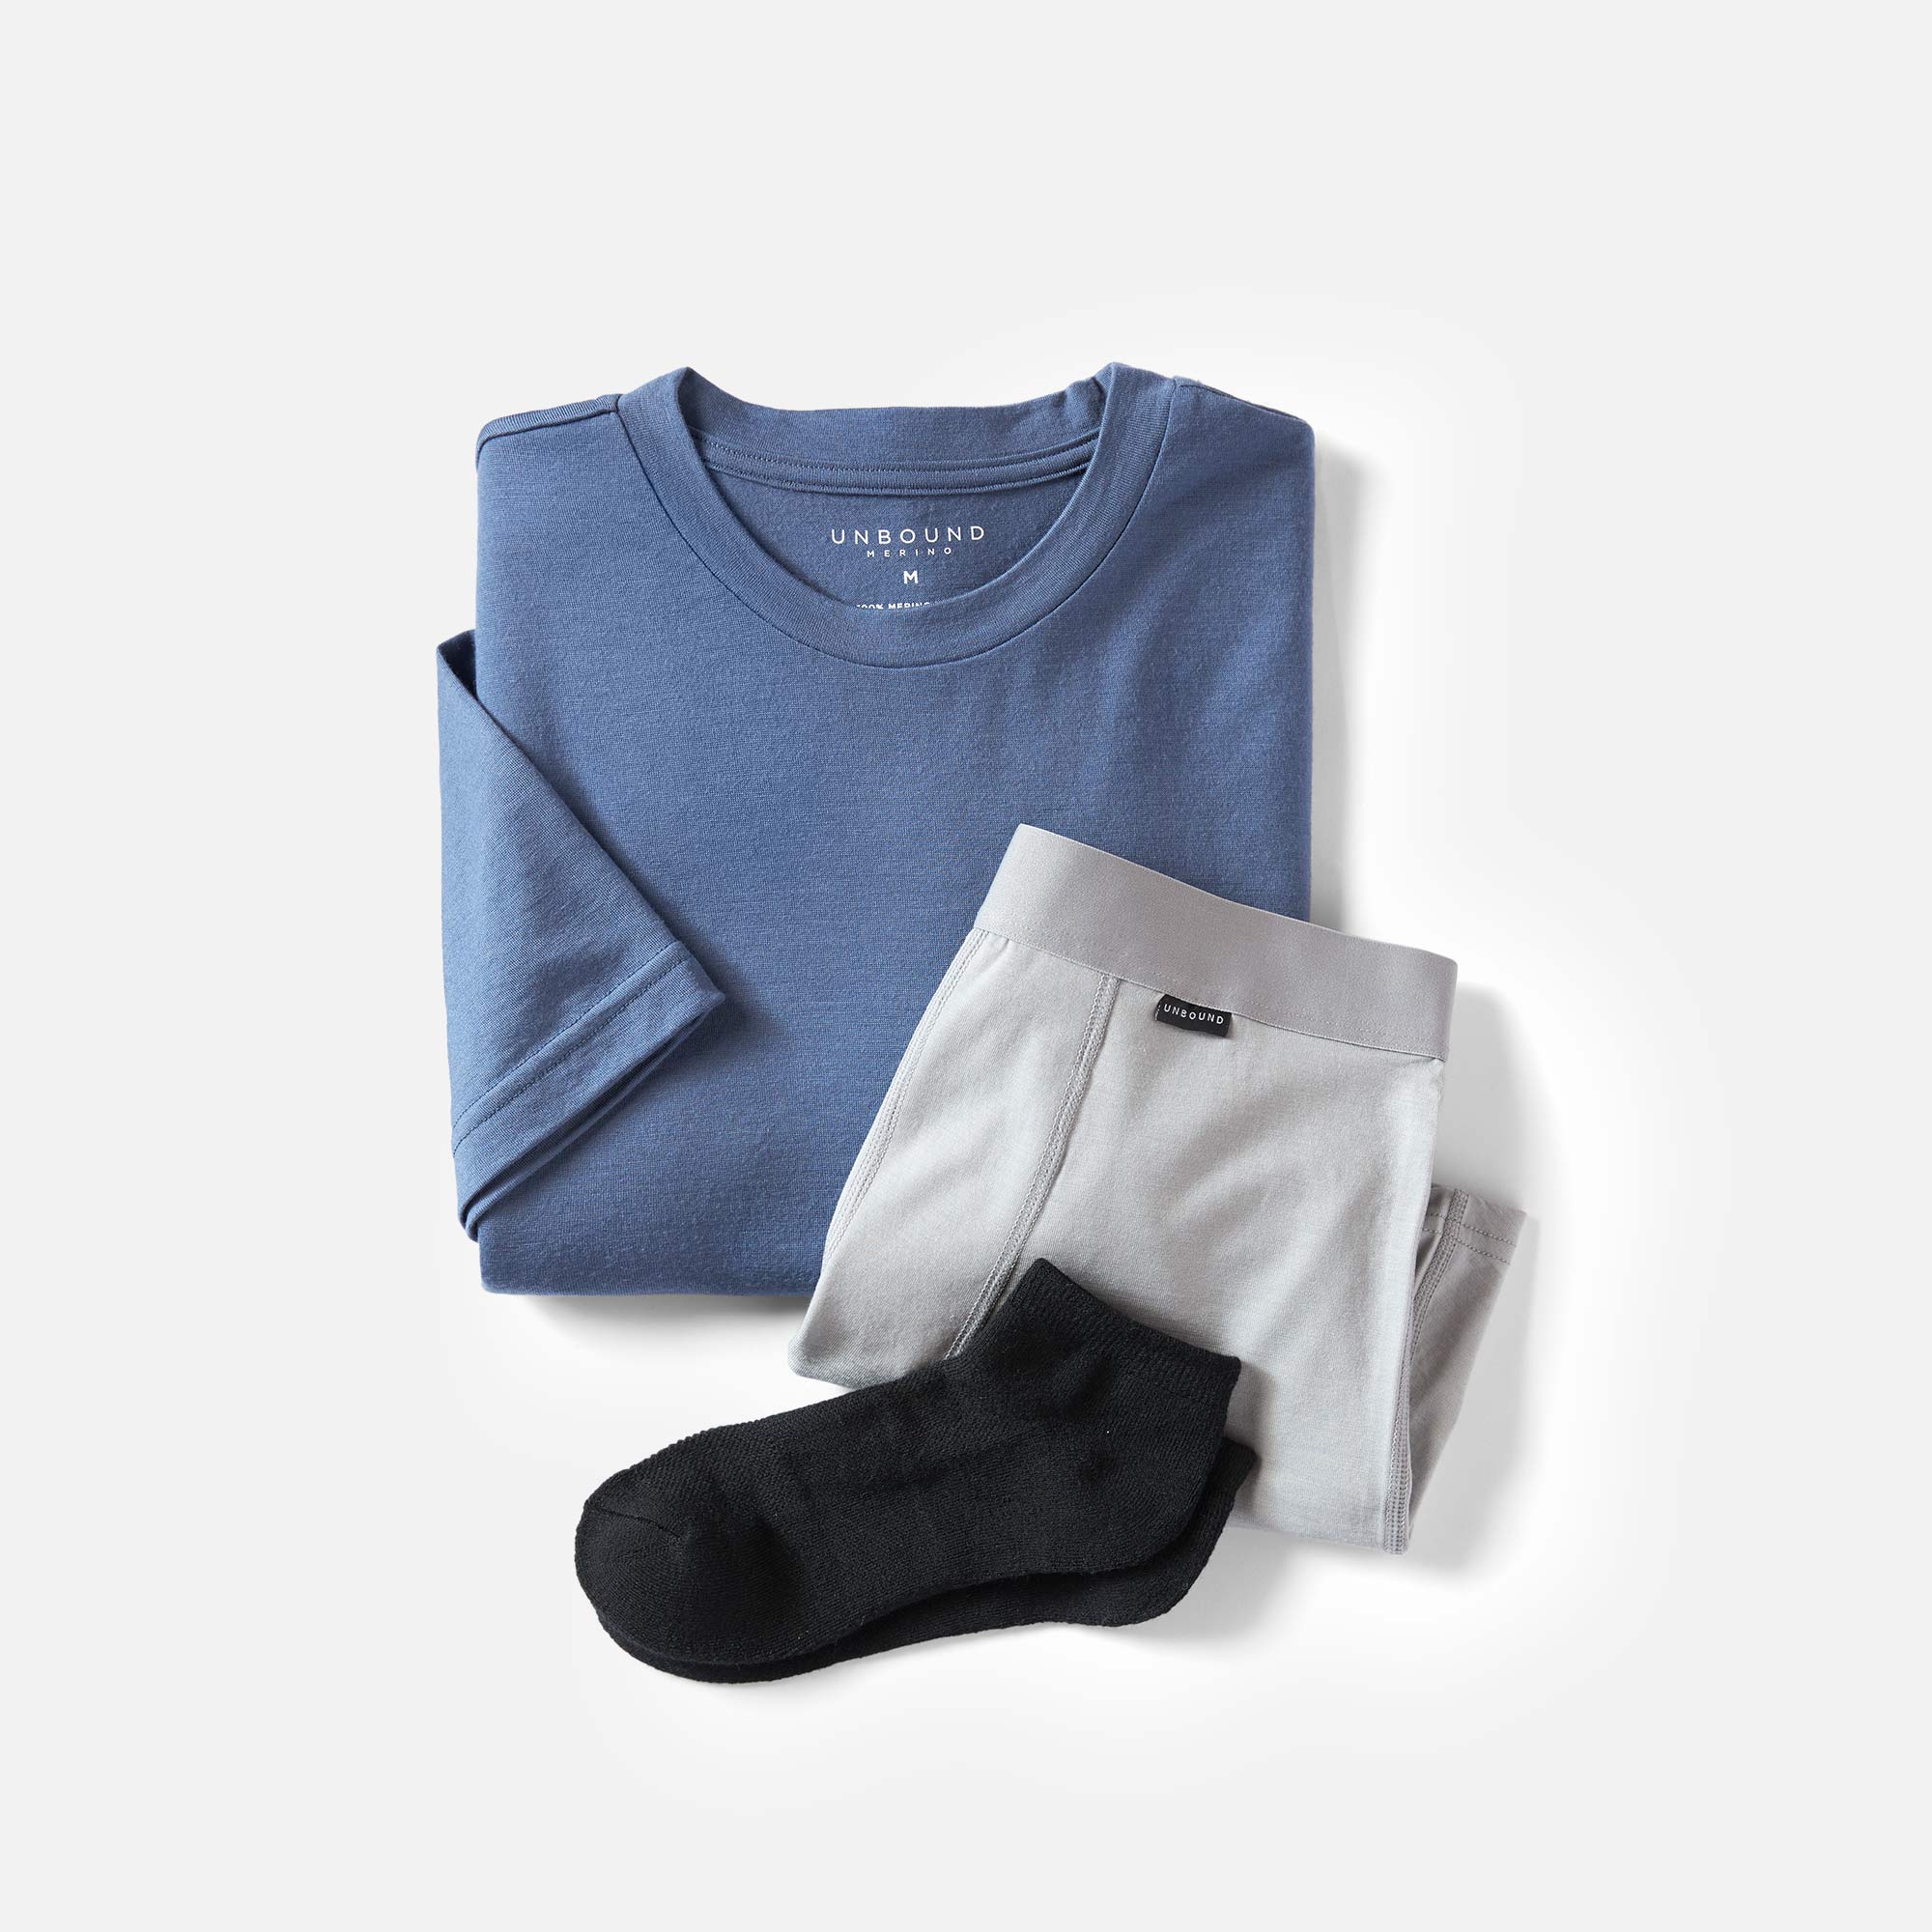 Merino Wool Bundle  Merino Wool Shirt, Socks & Underwear – Unbound Merino